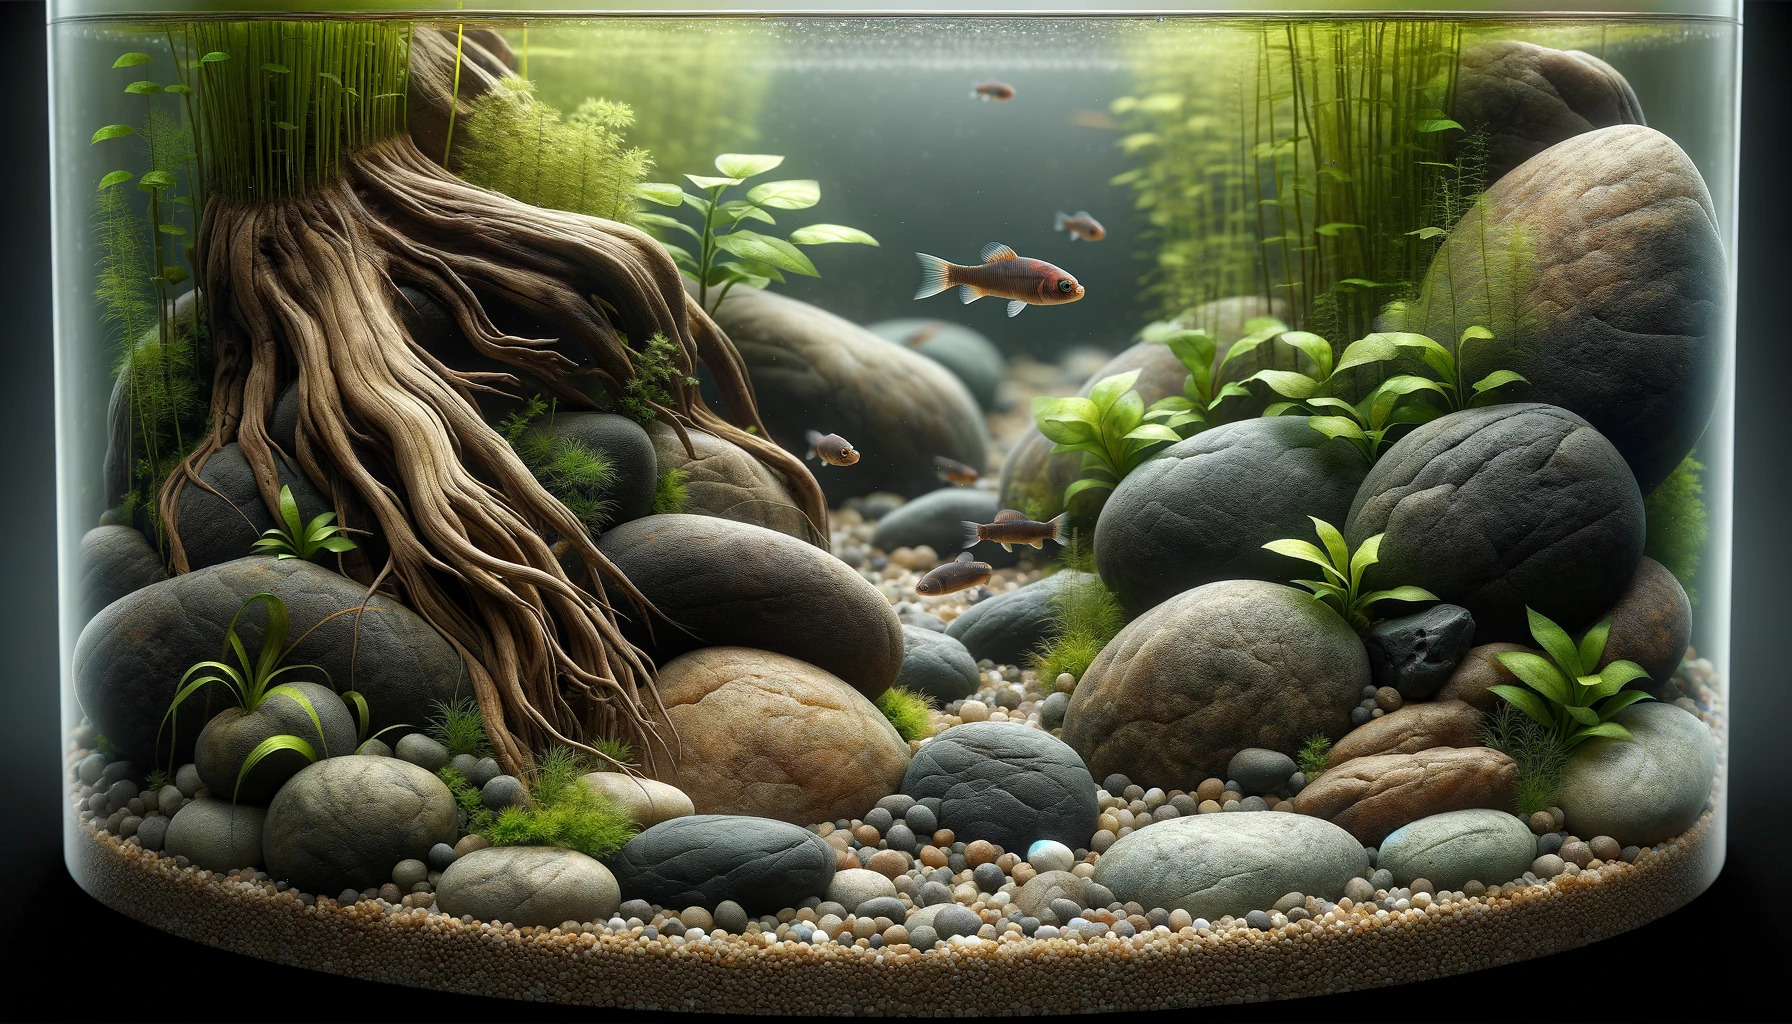 Ausschnitt eines Aquariums mit vielen Steinen und Wurzeln und wenigen Pflanzen, künstlerisch